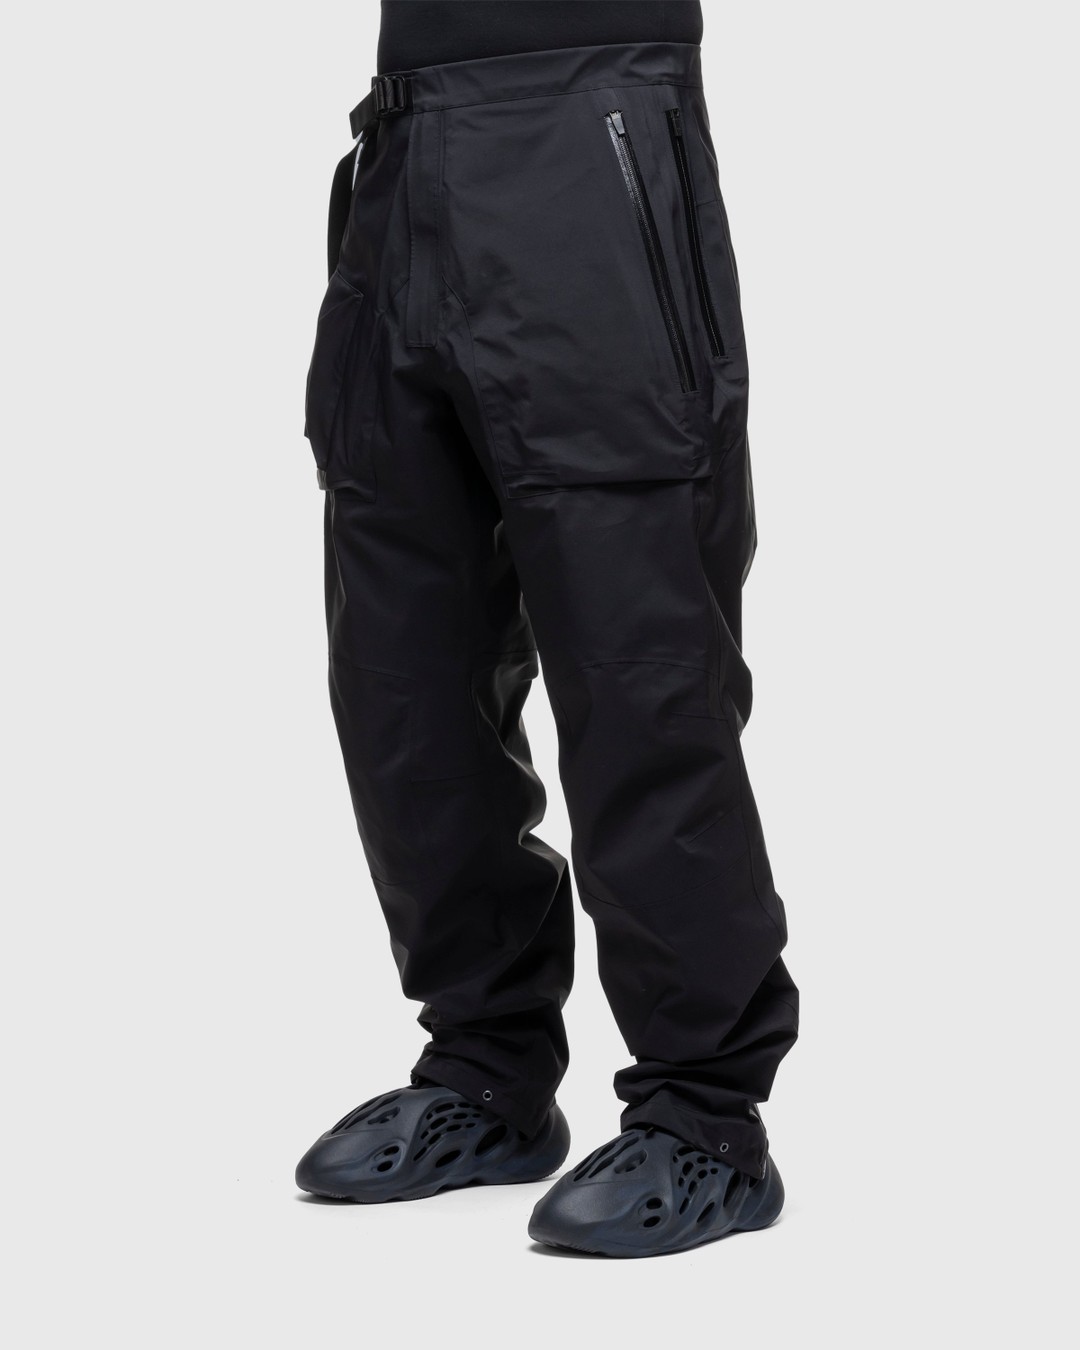 ACRONYM – P43-GT Pant Black - Active Pants - Black - Image 5